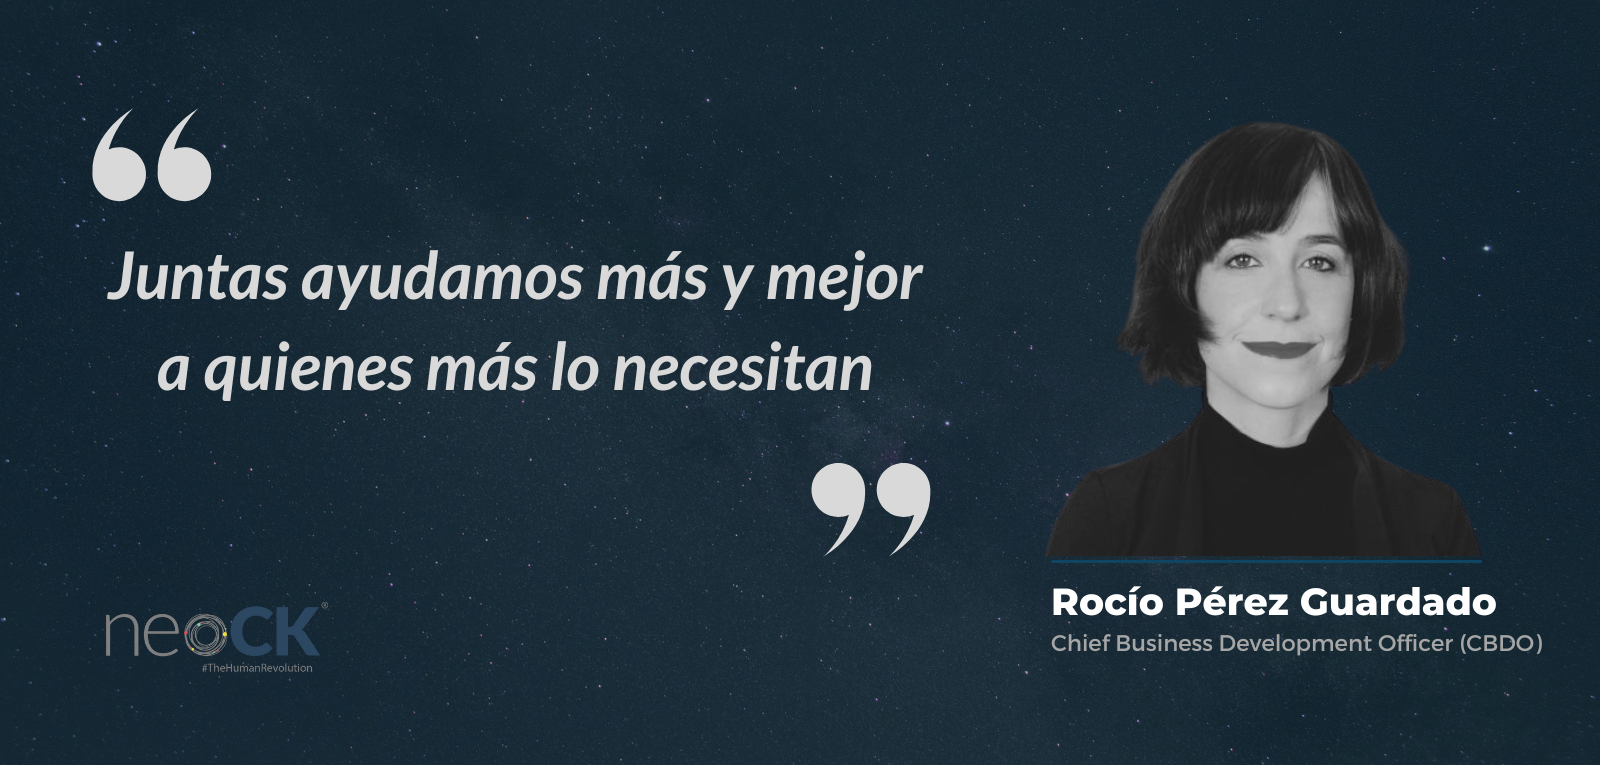 Rocio Perez encuentro empresarial - APOSTAR POR EL NETWORKING PARA IMPULSAR LA COLABORACIÓN Y EL TRABAJO EN PARTENARIADO